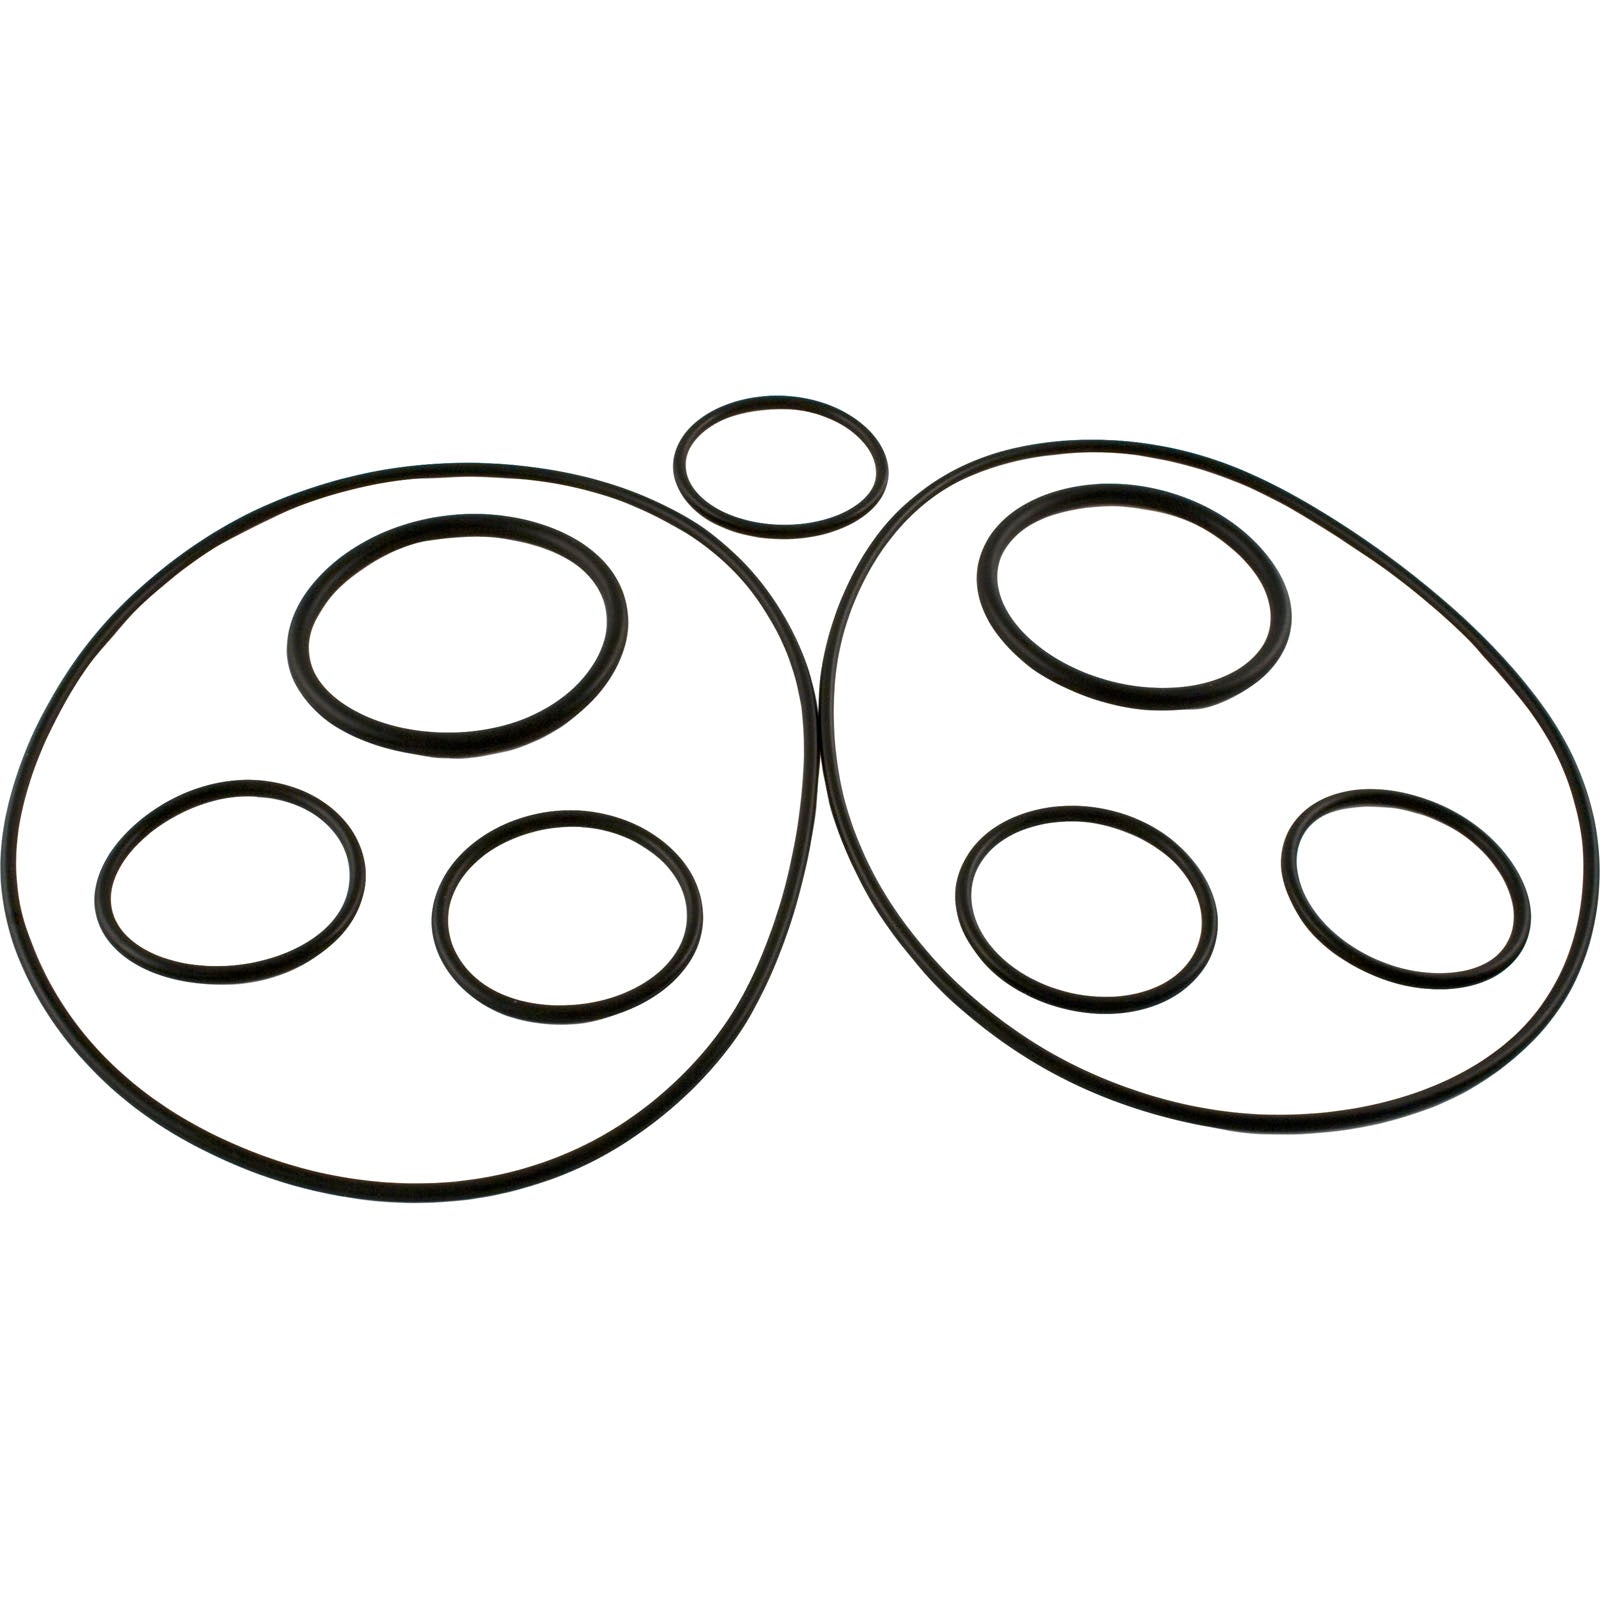 O-Ring Kit, Zodiac Polaris 5-13-1